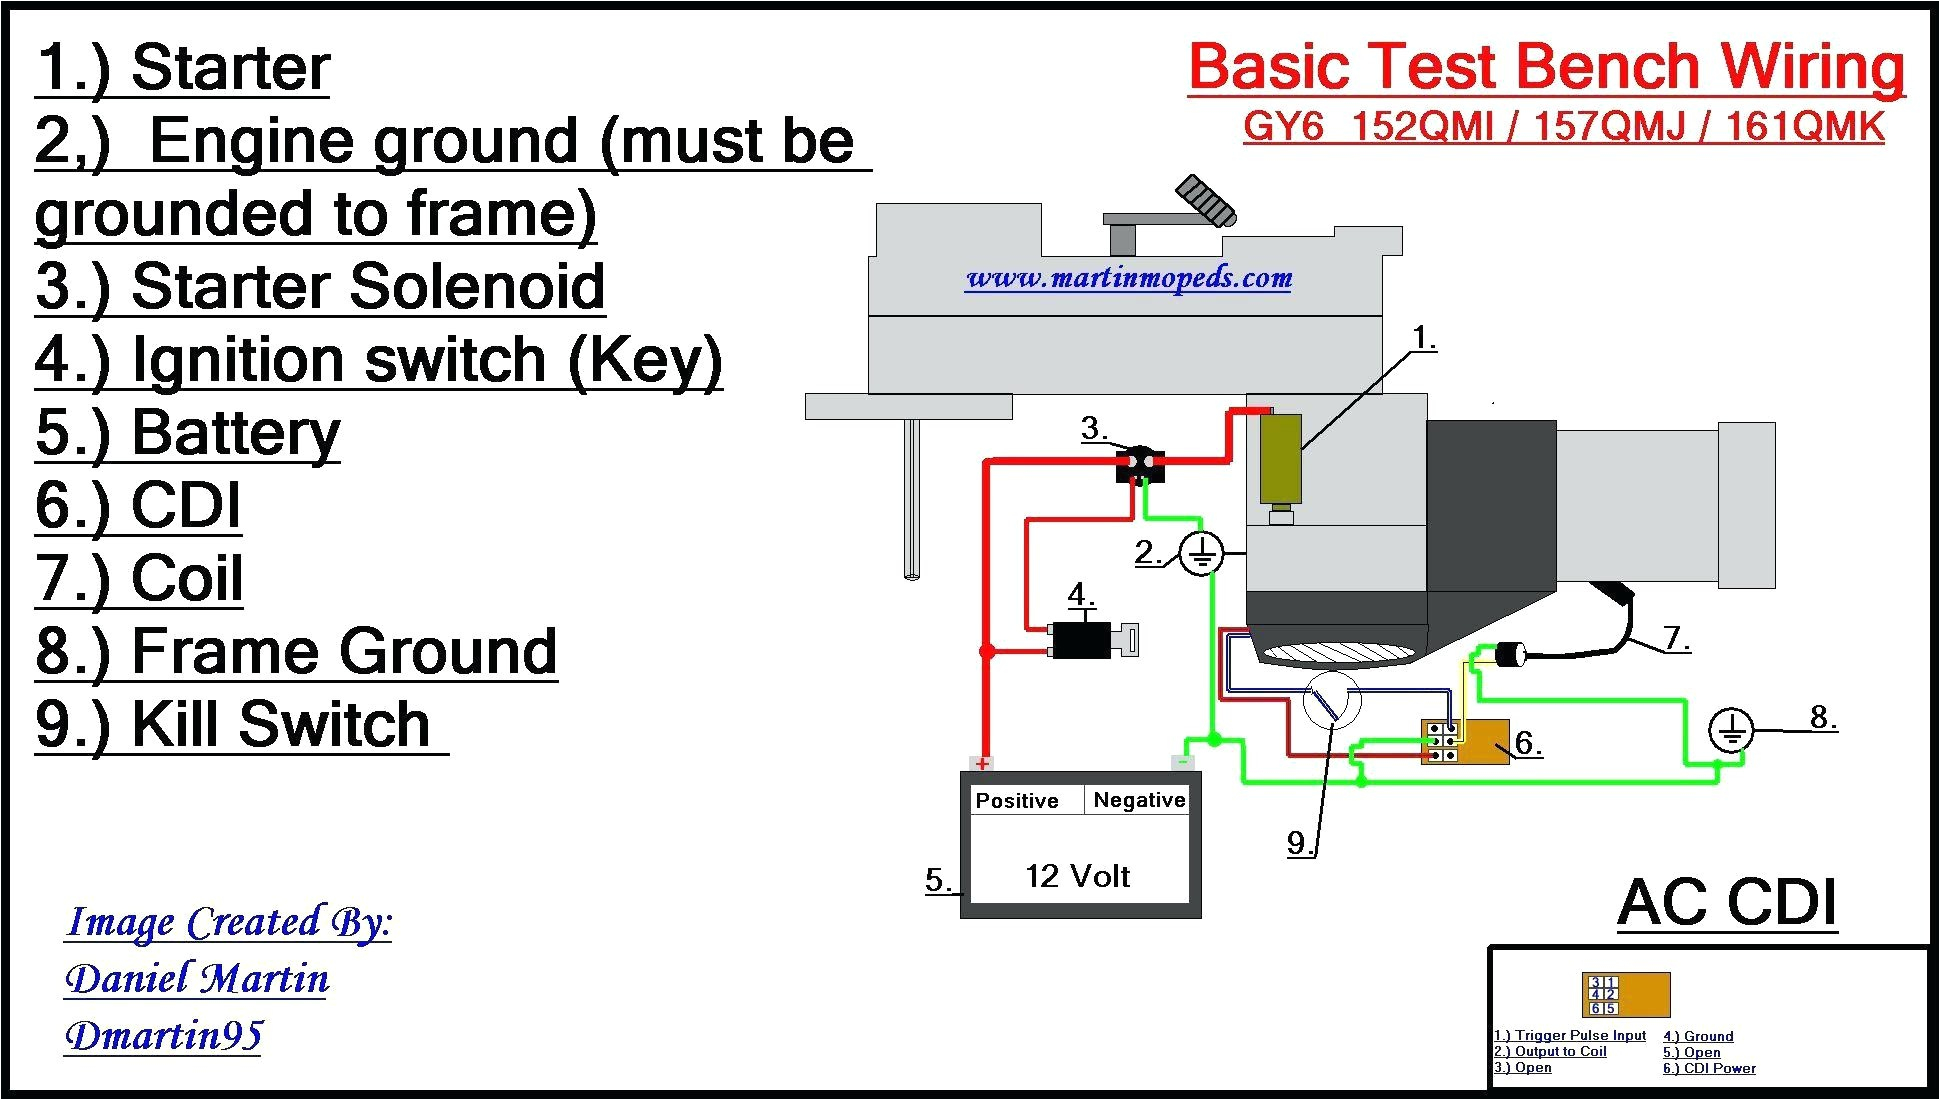 dc cdi atv wiring diagrams wiring diagram user dc cdi atv wiring diagrams